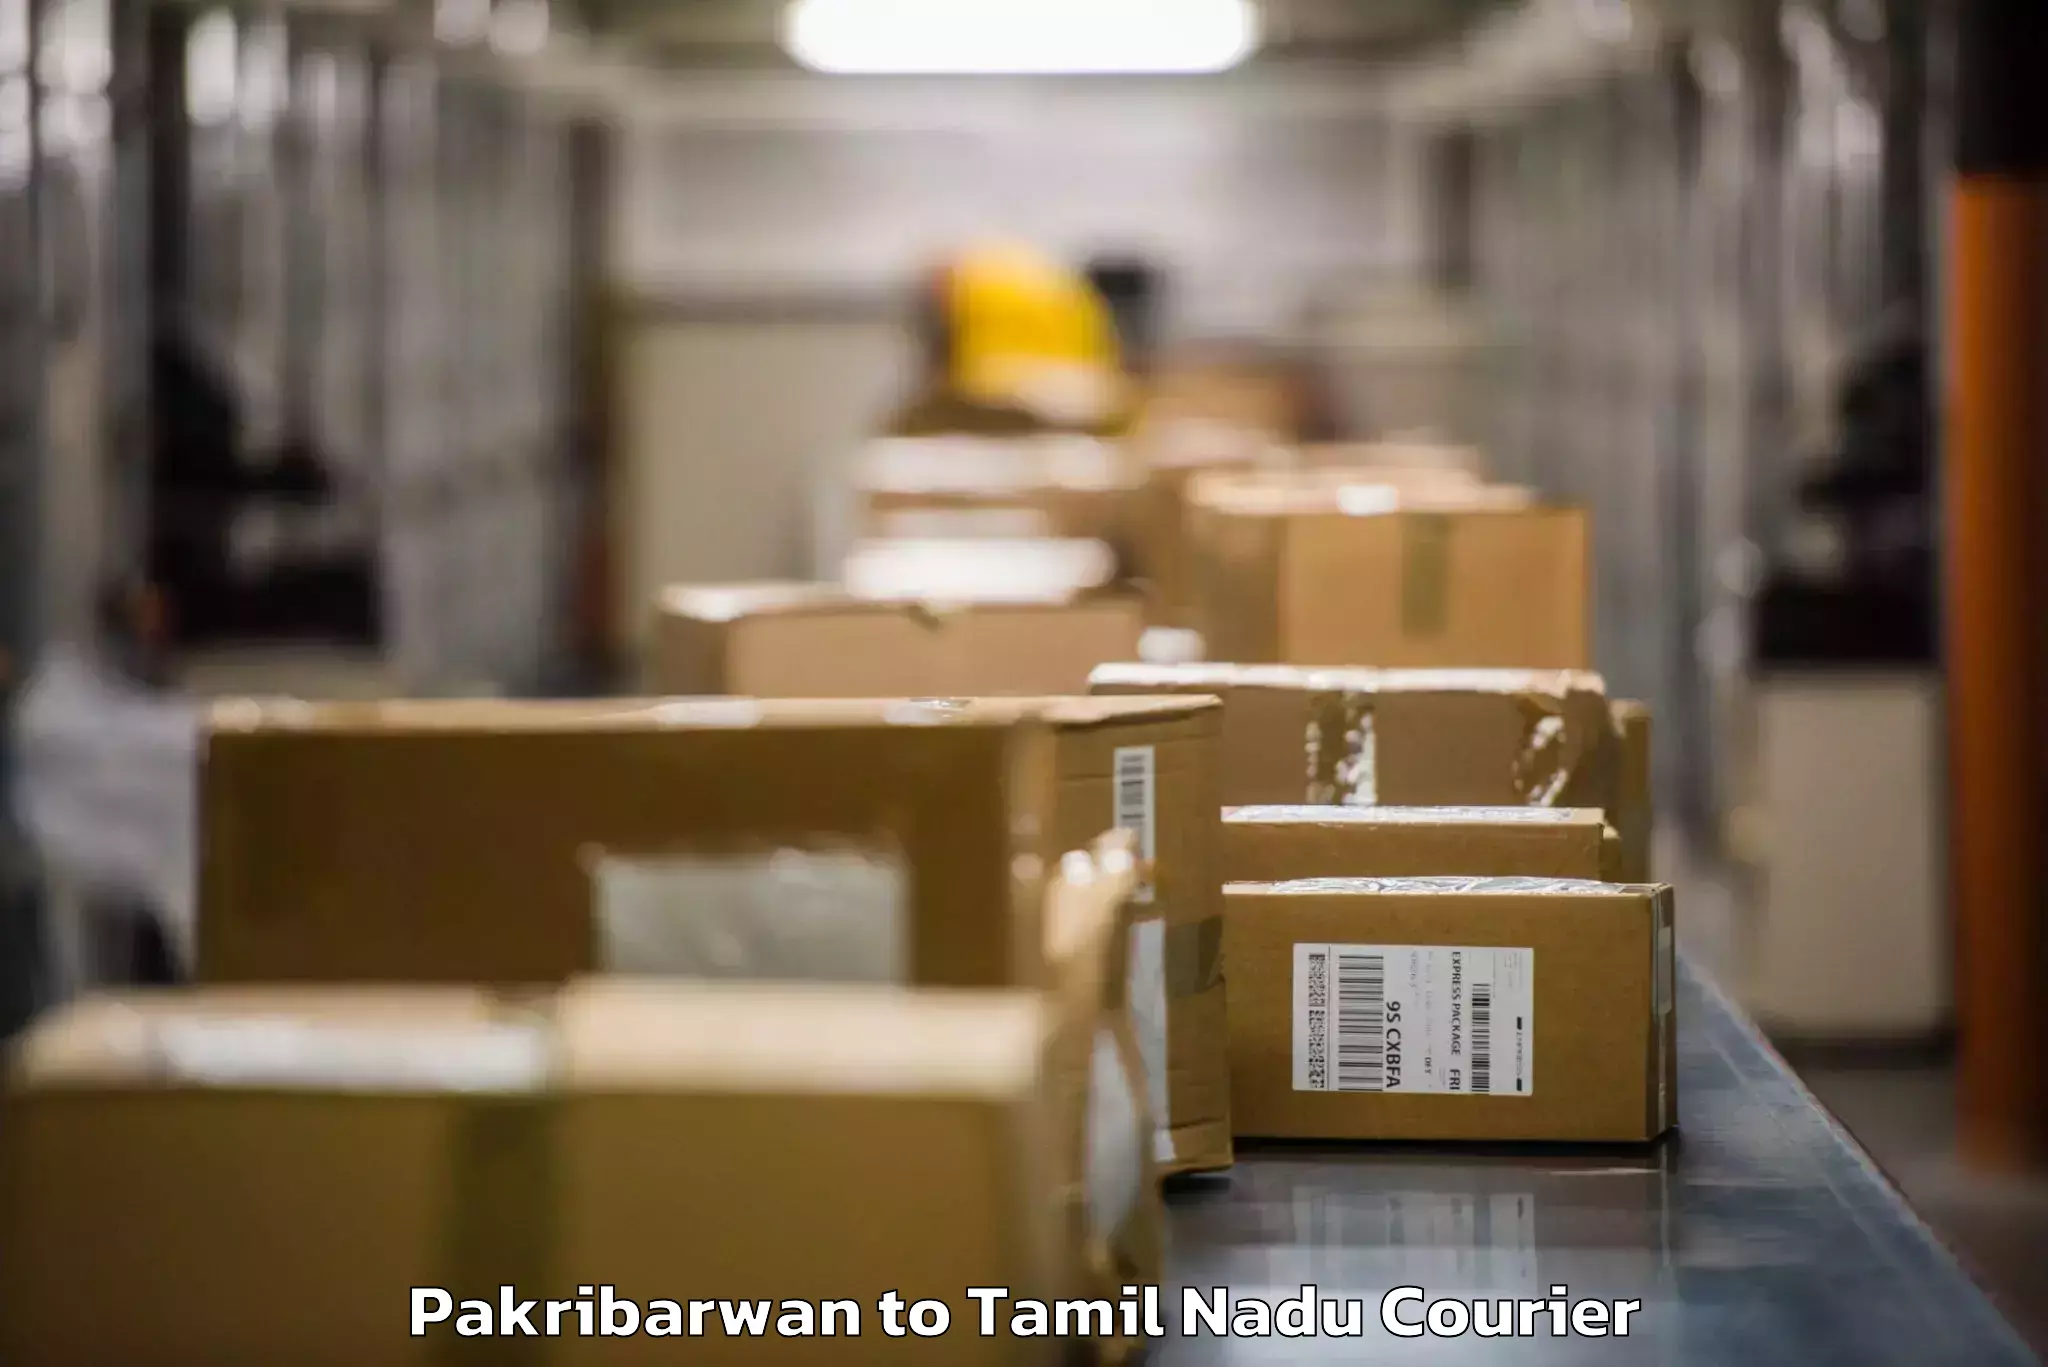 Urgent luggage shipment in Pakribarwan to Kumbakonam